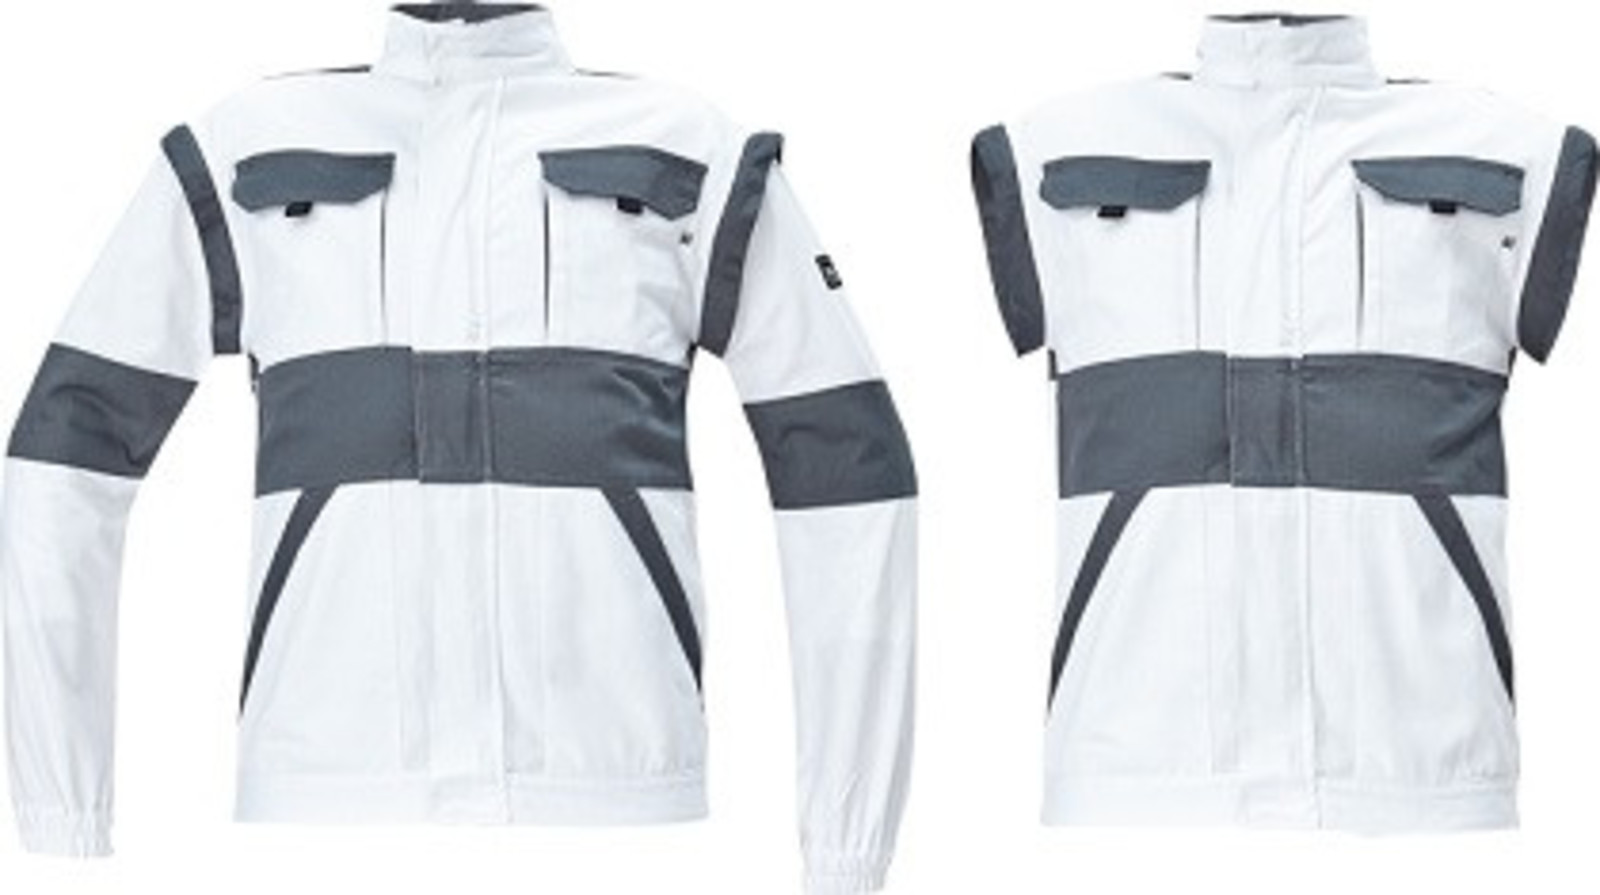 Bavlnená montérková bunda a vesta Cerva Max Neo 2v1 - veľkosť: 64, farba: biela